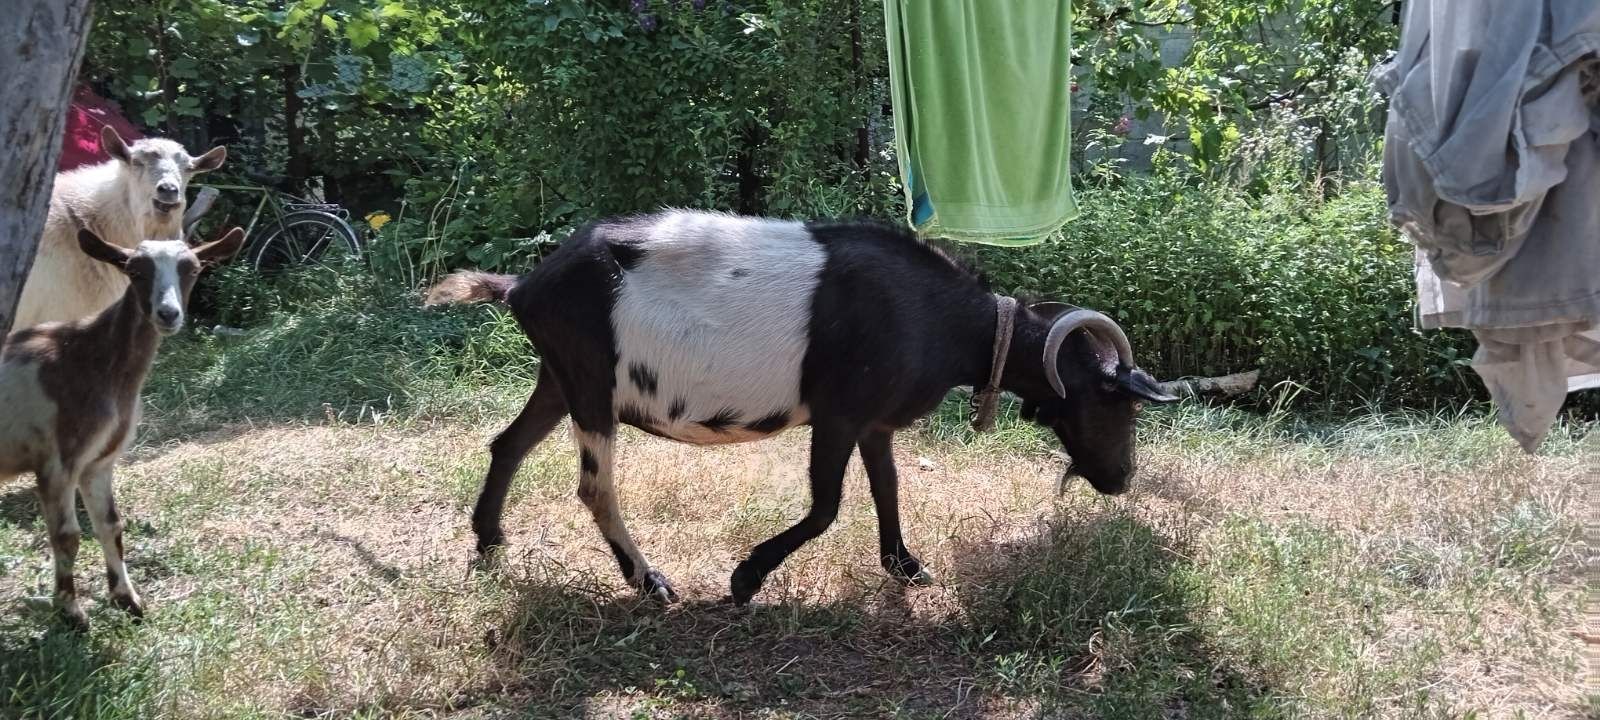 Зааненские козы от 4месяцев до 5лет